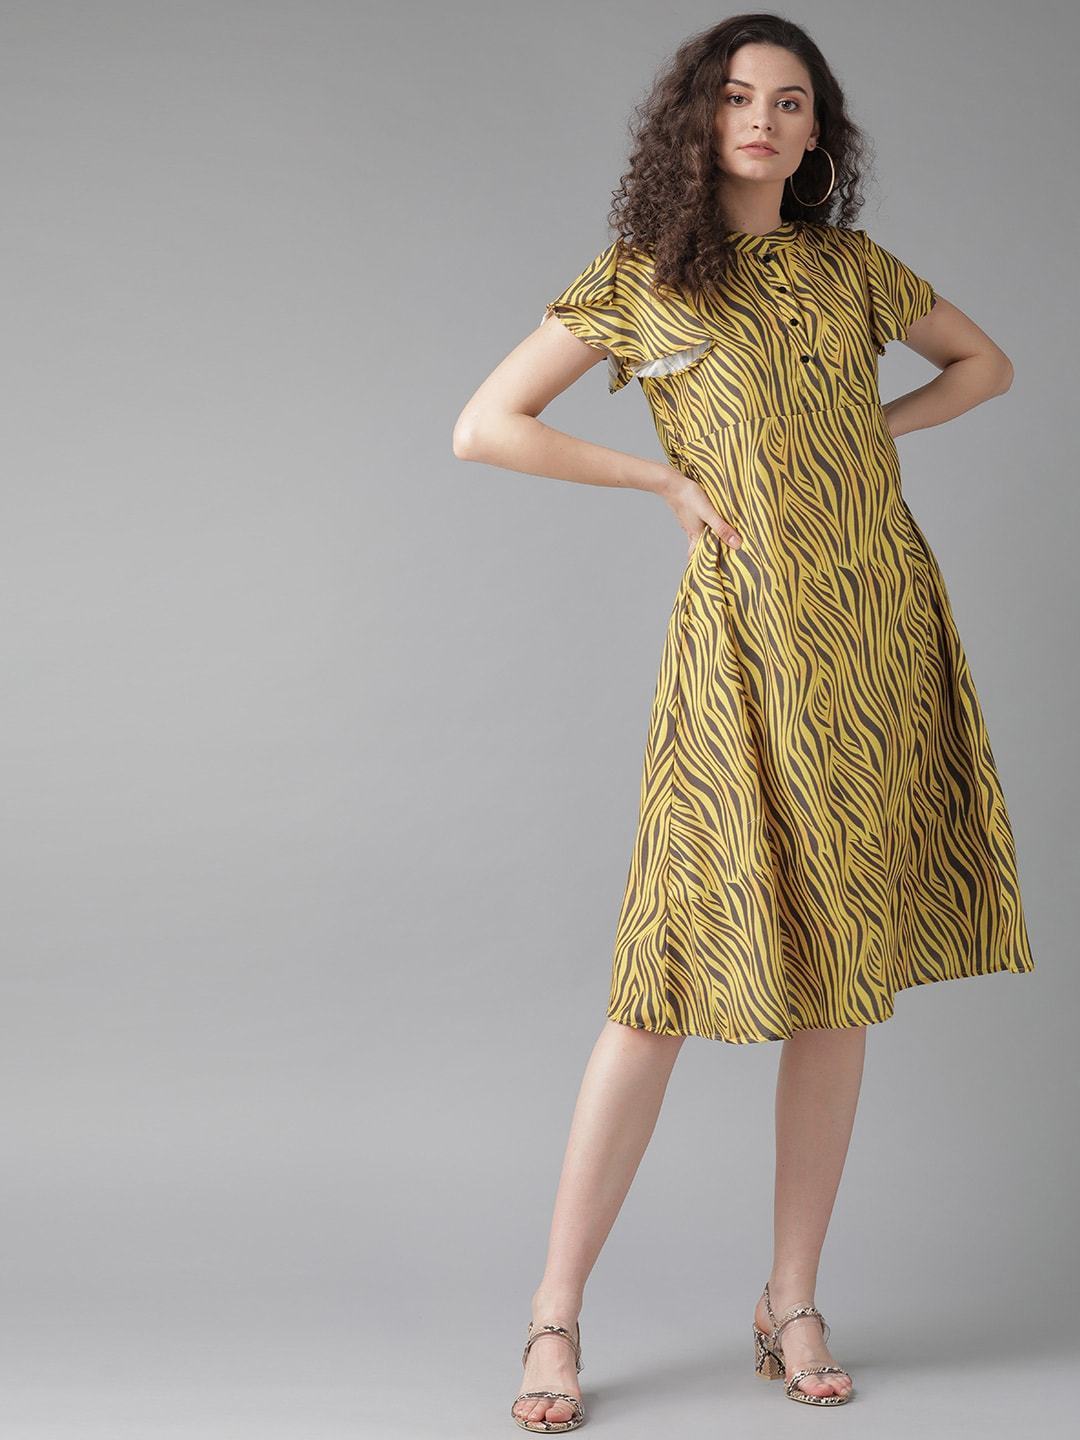 Women's  Yellow & Charcoal Grey Zebra Print A-Line Dress - AKS